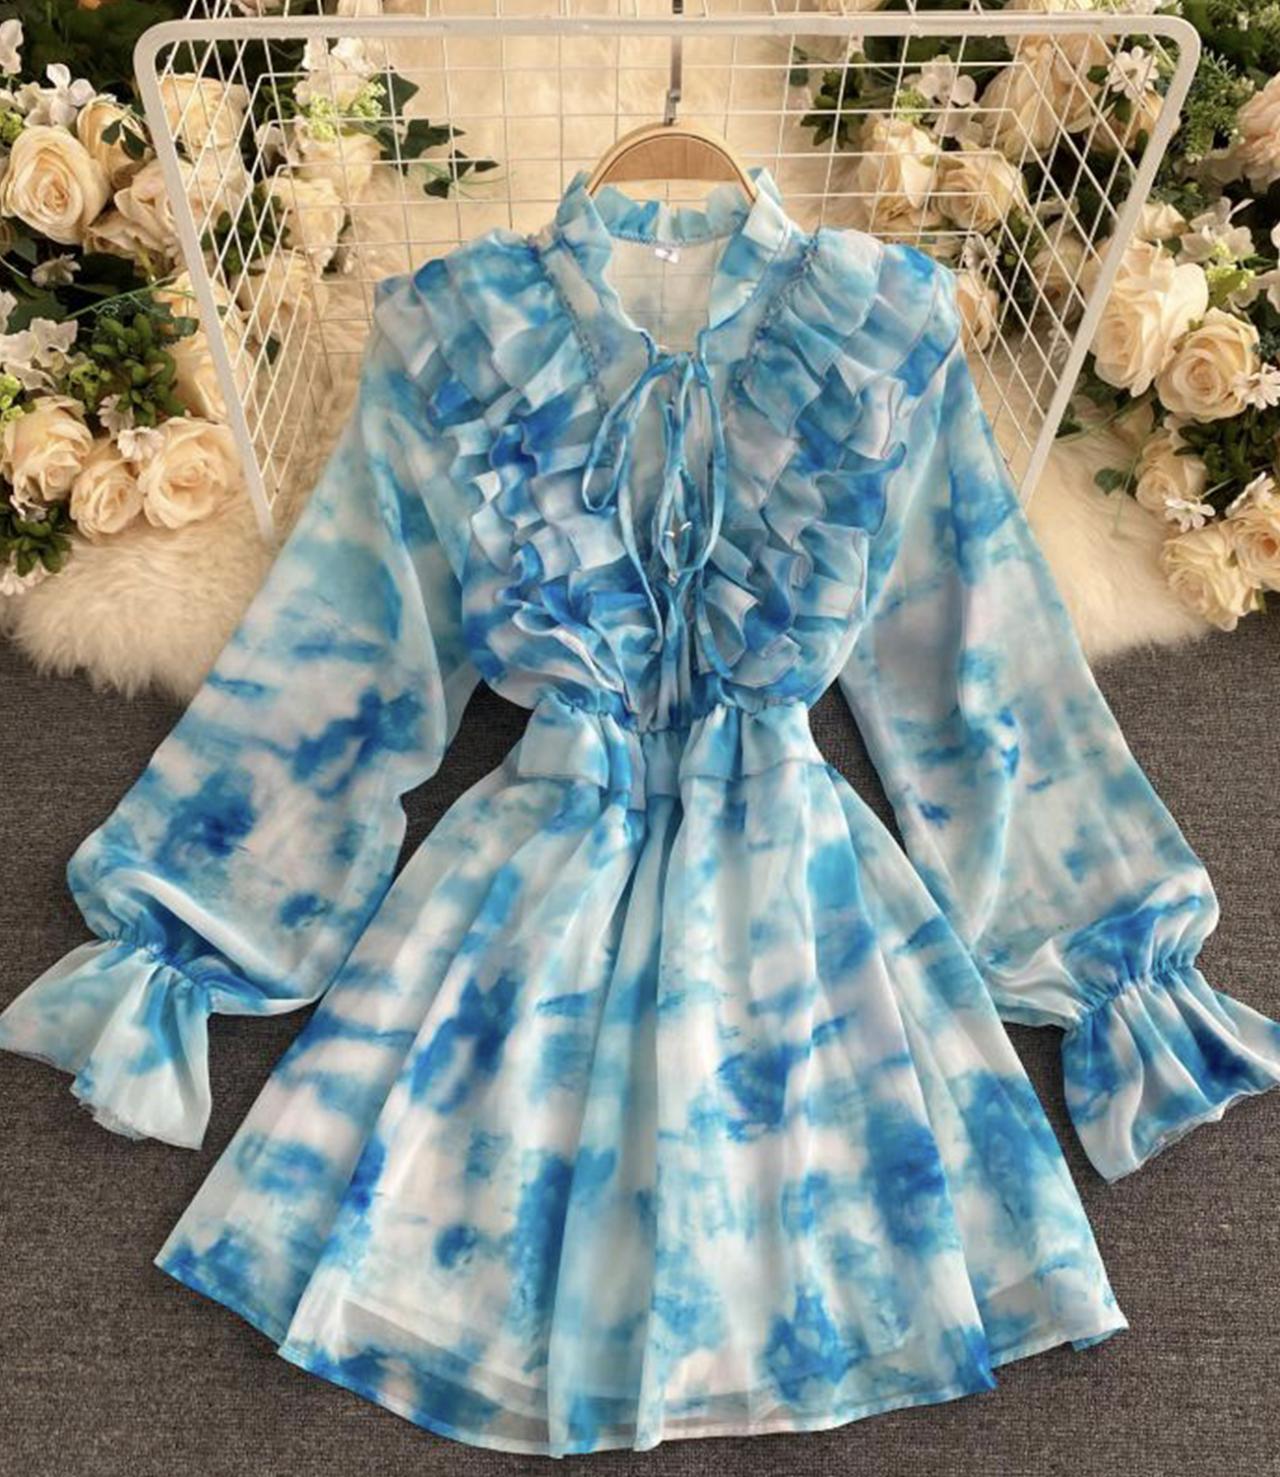 Blue A line long sleeve dress fashion dress 649